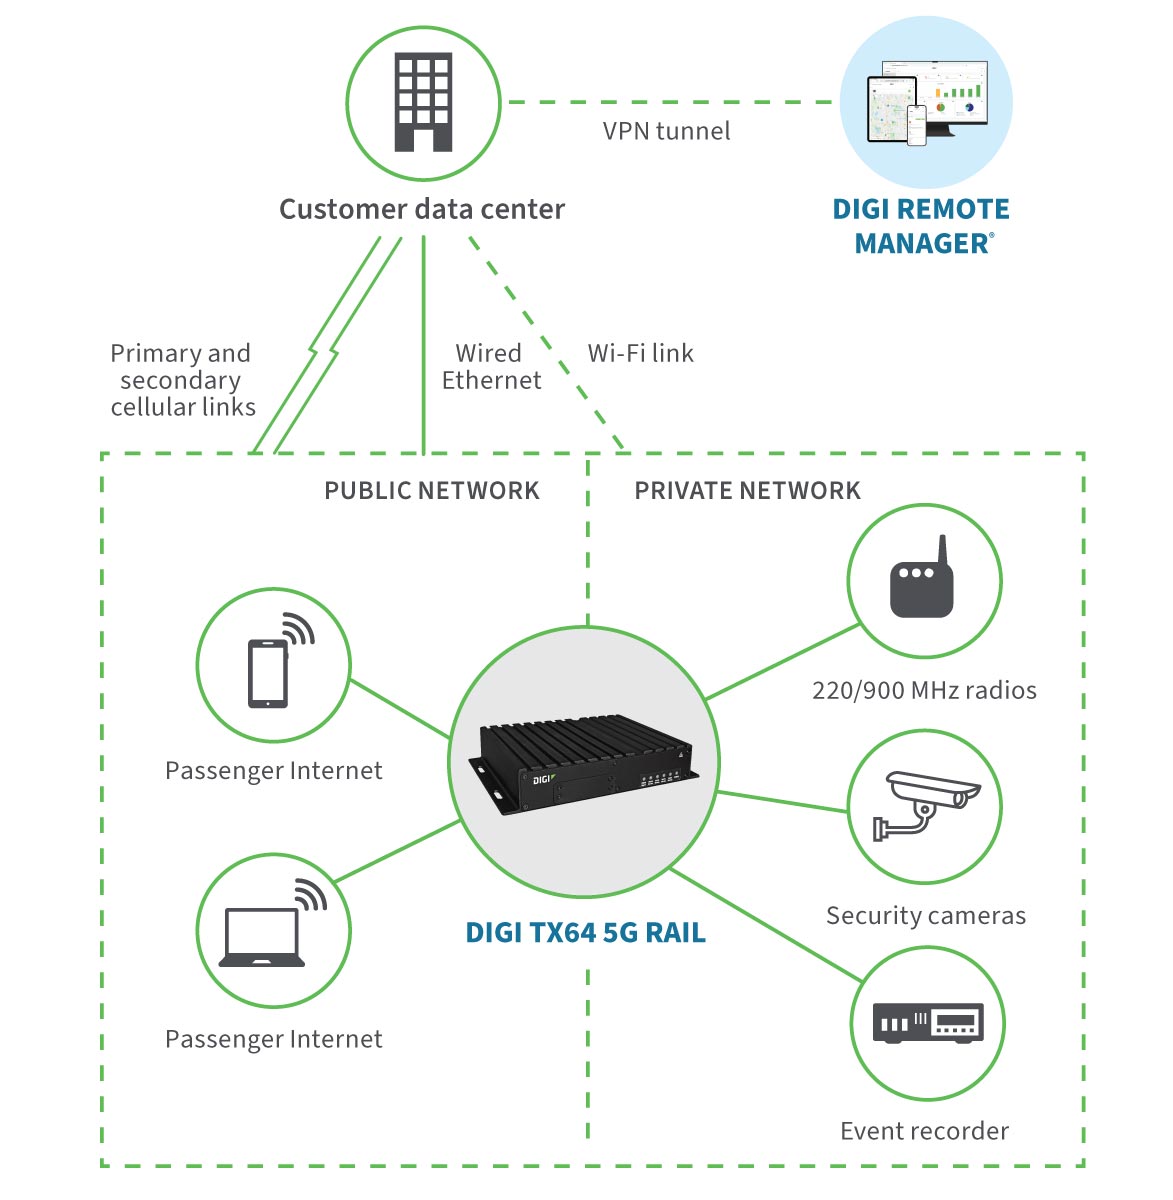 Los routers Digi son robustos y están preparados para una gama completa de soluciones de control positivo de trenes, de vías y de conectividad de motores